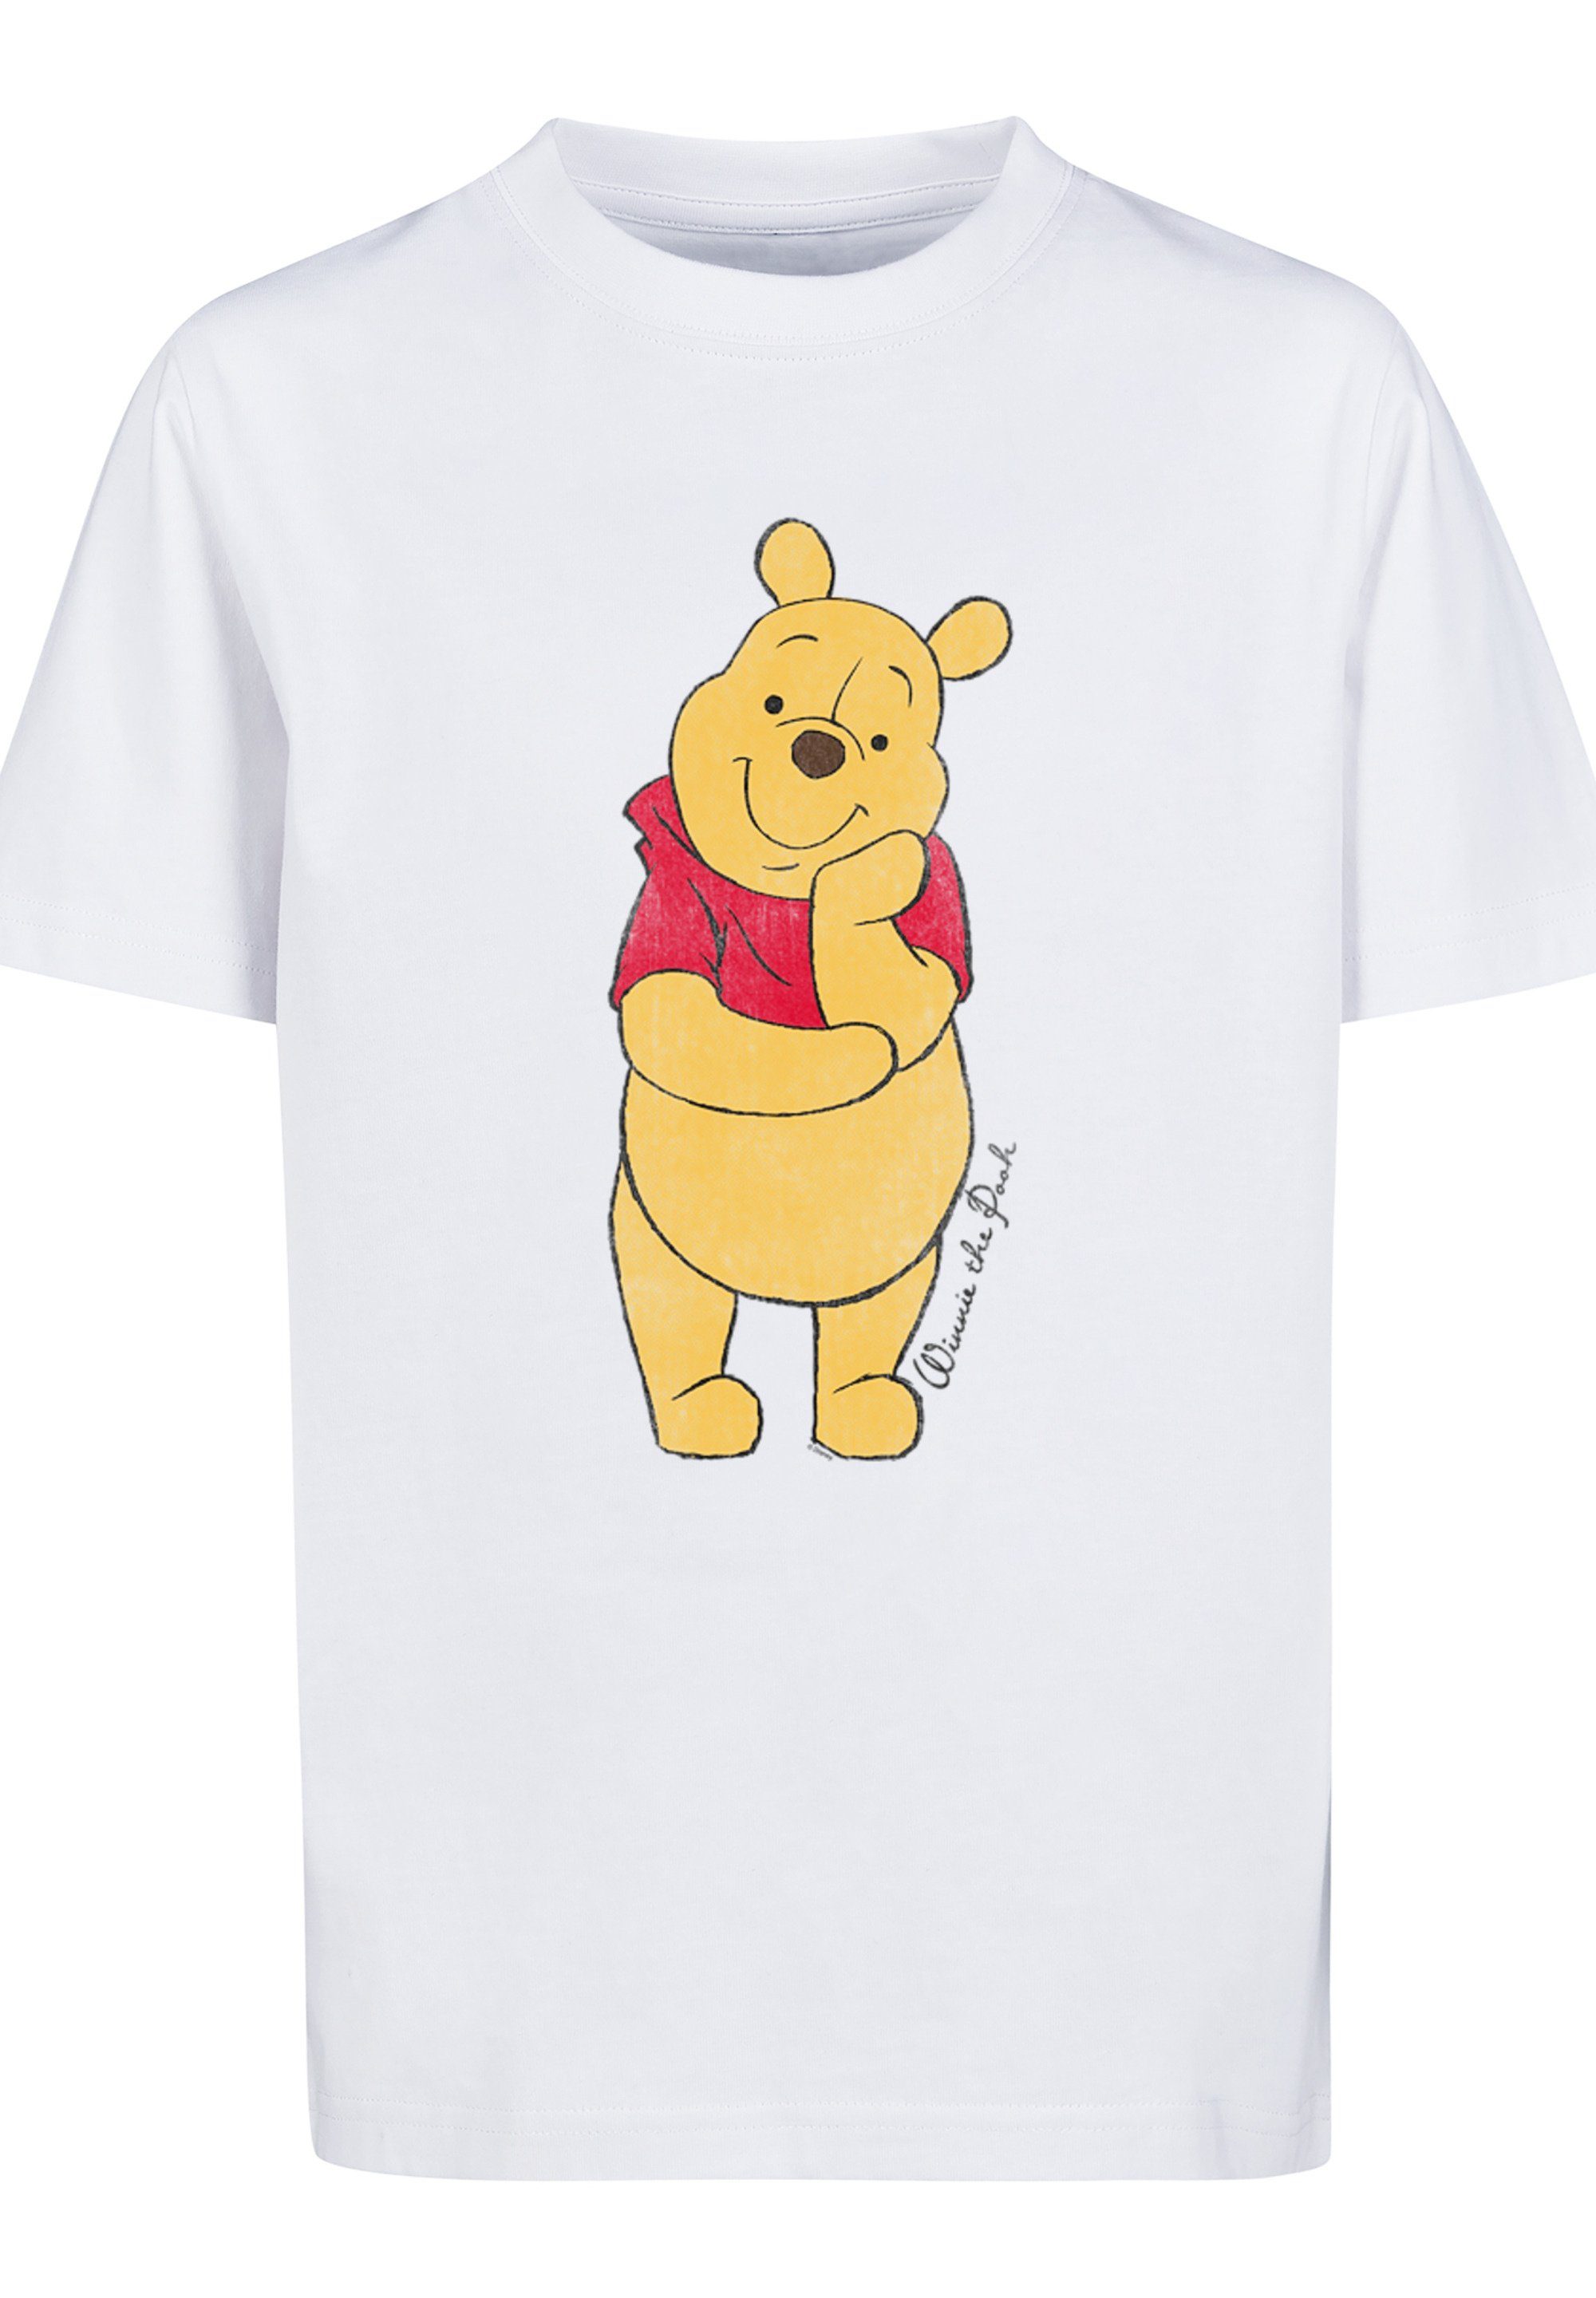 T-Shirt F4NT4STIC weiß Pooh Unisex Winnie Merch,Jungen,Mädchen,Bedruckt Kinder,Premium Disney The Classic